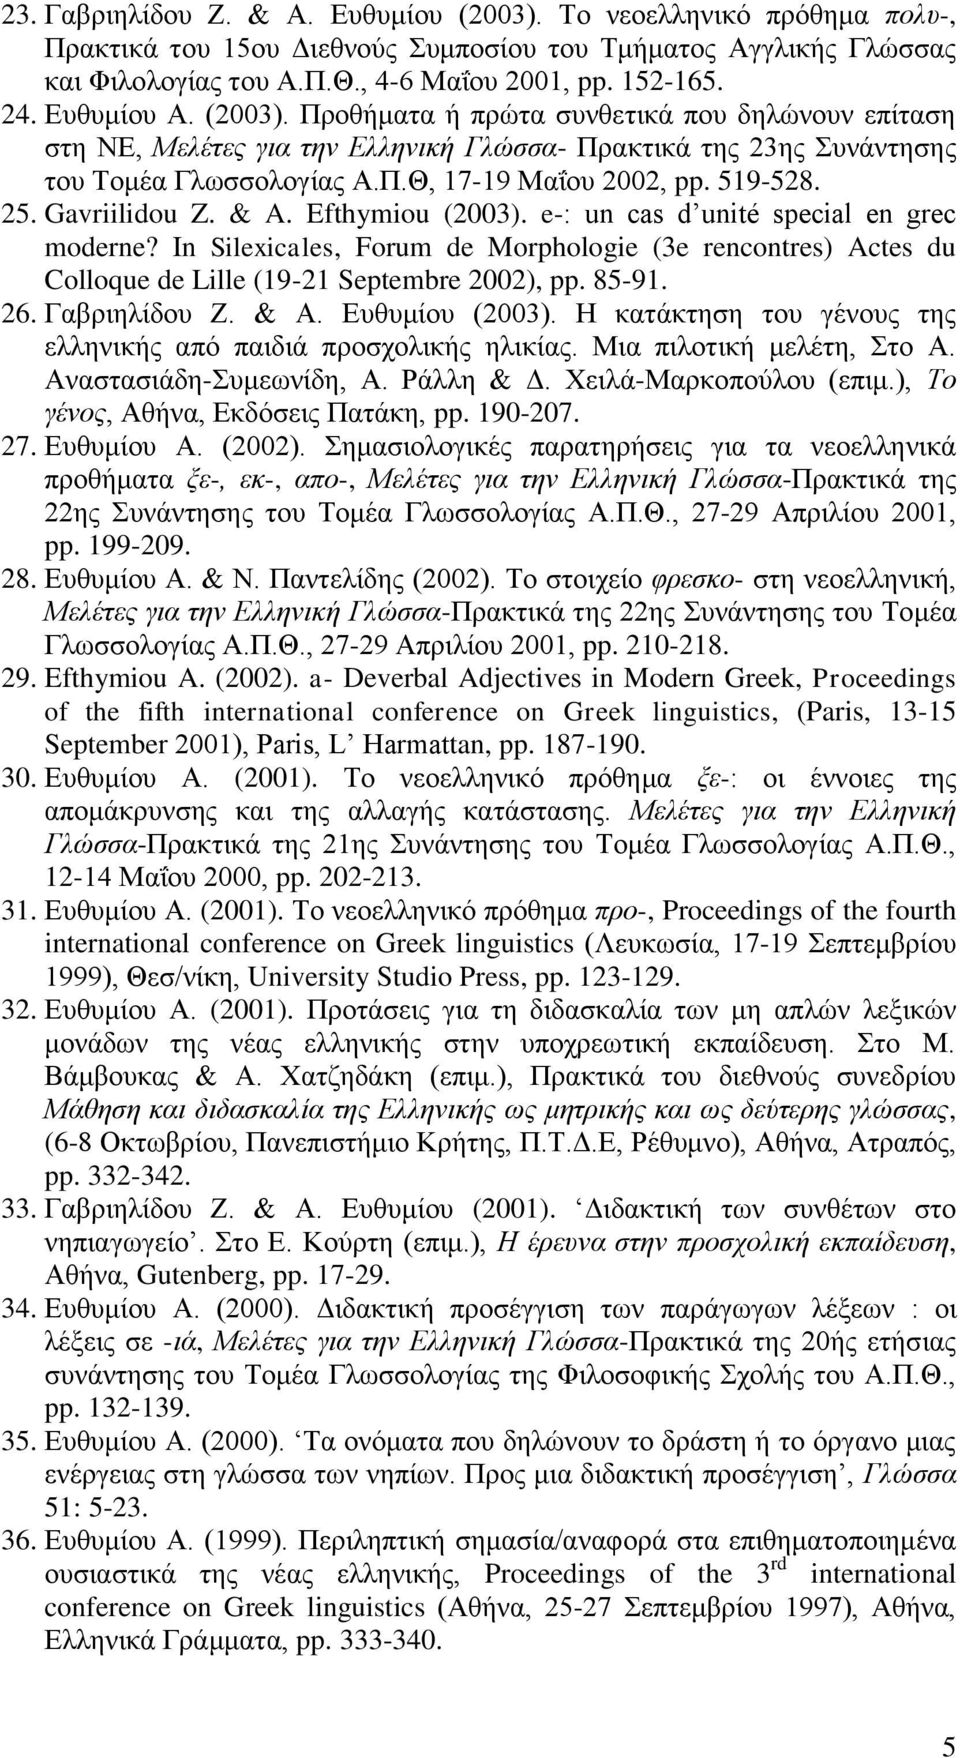 25. Gavriilidou Z. & A. Efthymiou (2003). e-: un cas d unité special en grec moderne? In Silexicales, Forum de Morphologie (3e rencontres) Actes du Colloque de Lille (19-21 Septembre 2002), pp. 85-91.